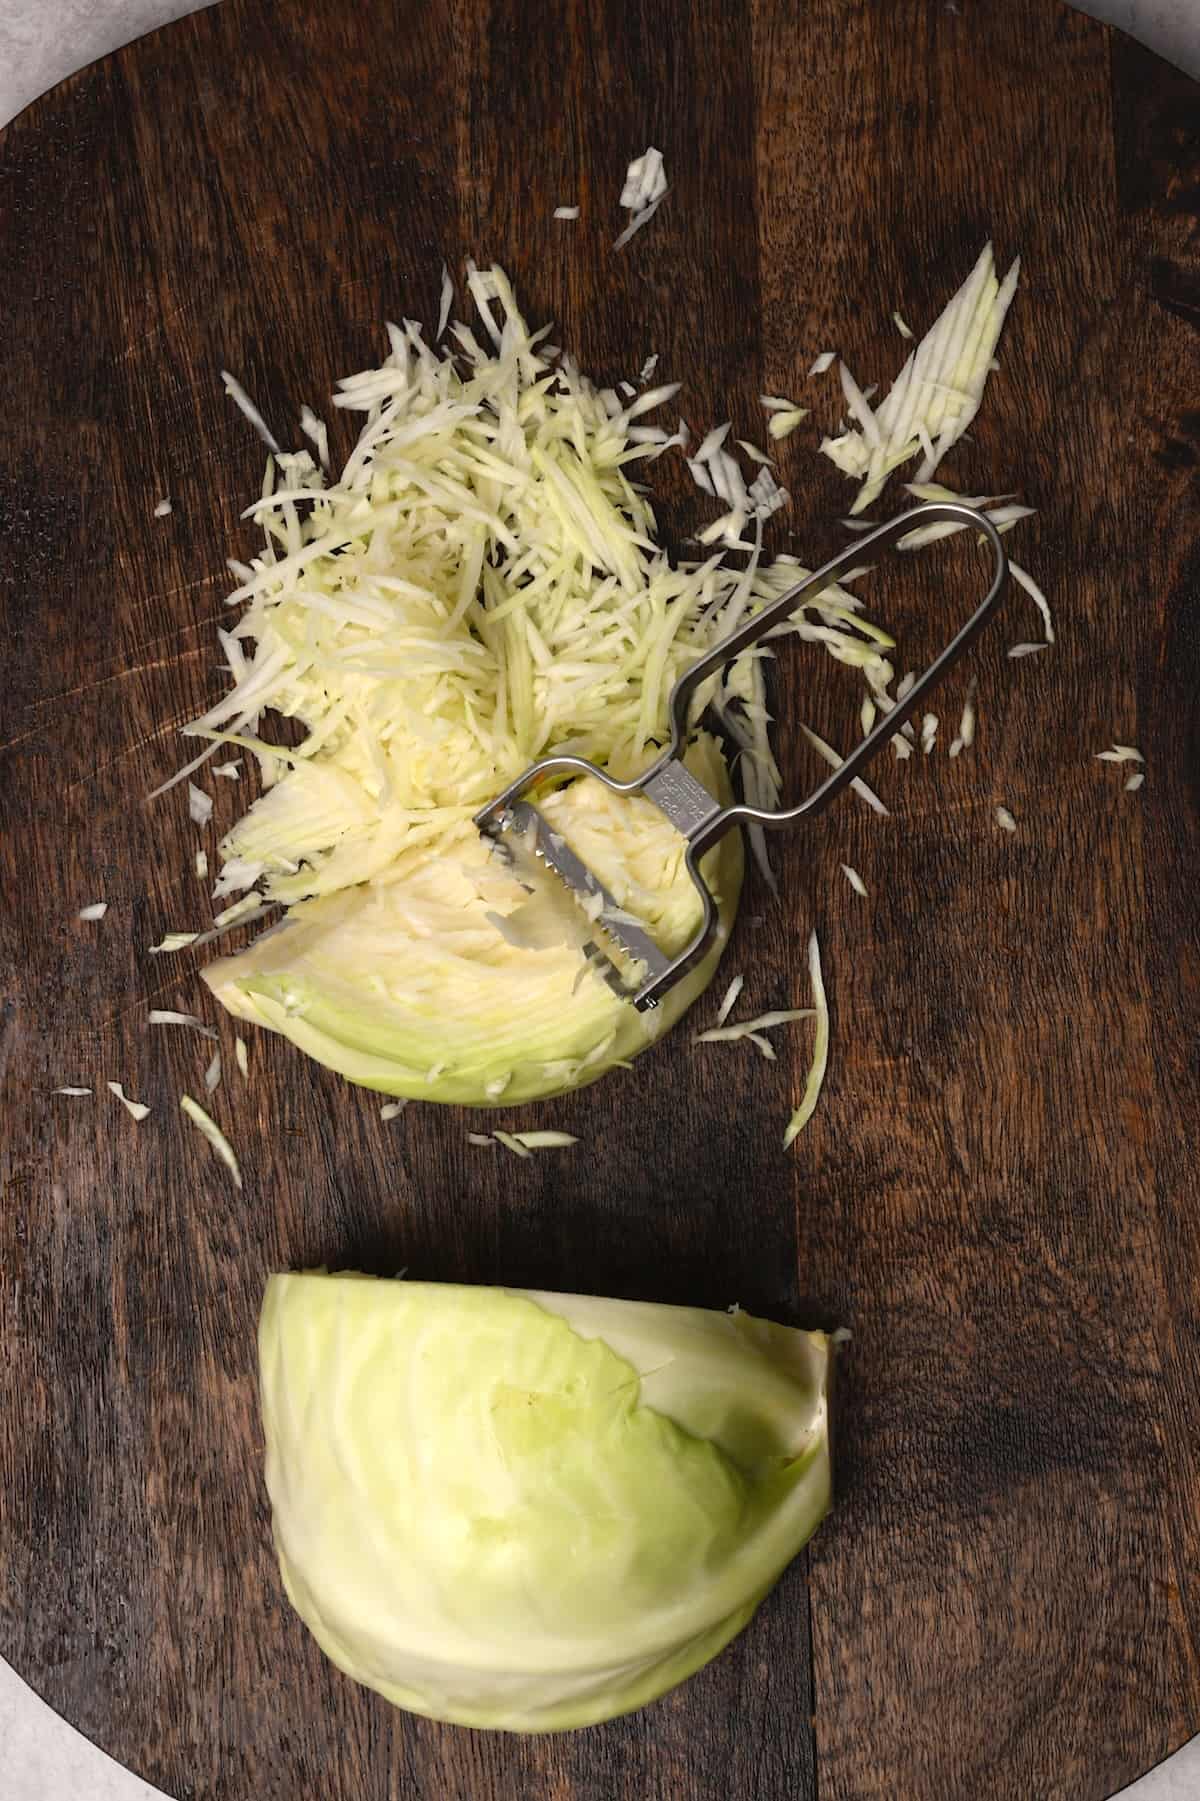 Shredding cabbage on a chopping board